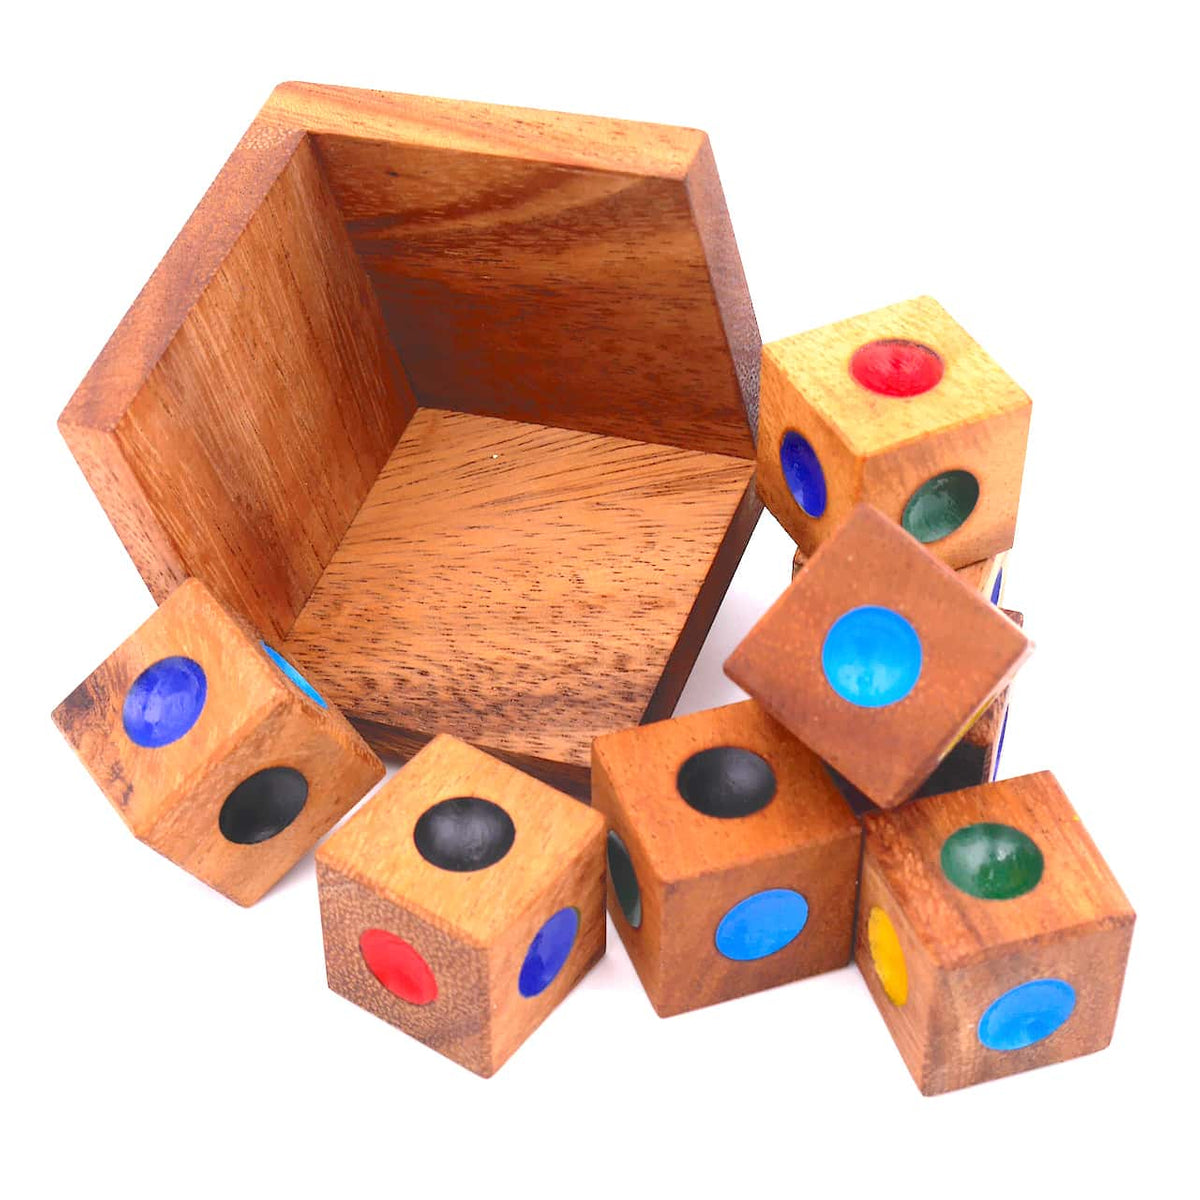 Holzbox und drumherum liegen 8 Holzwürfel, die auf jeder Seite verschiedene Farben haben.